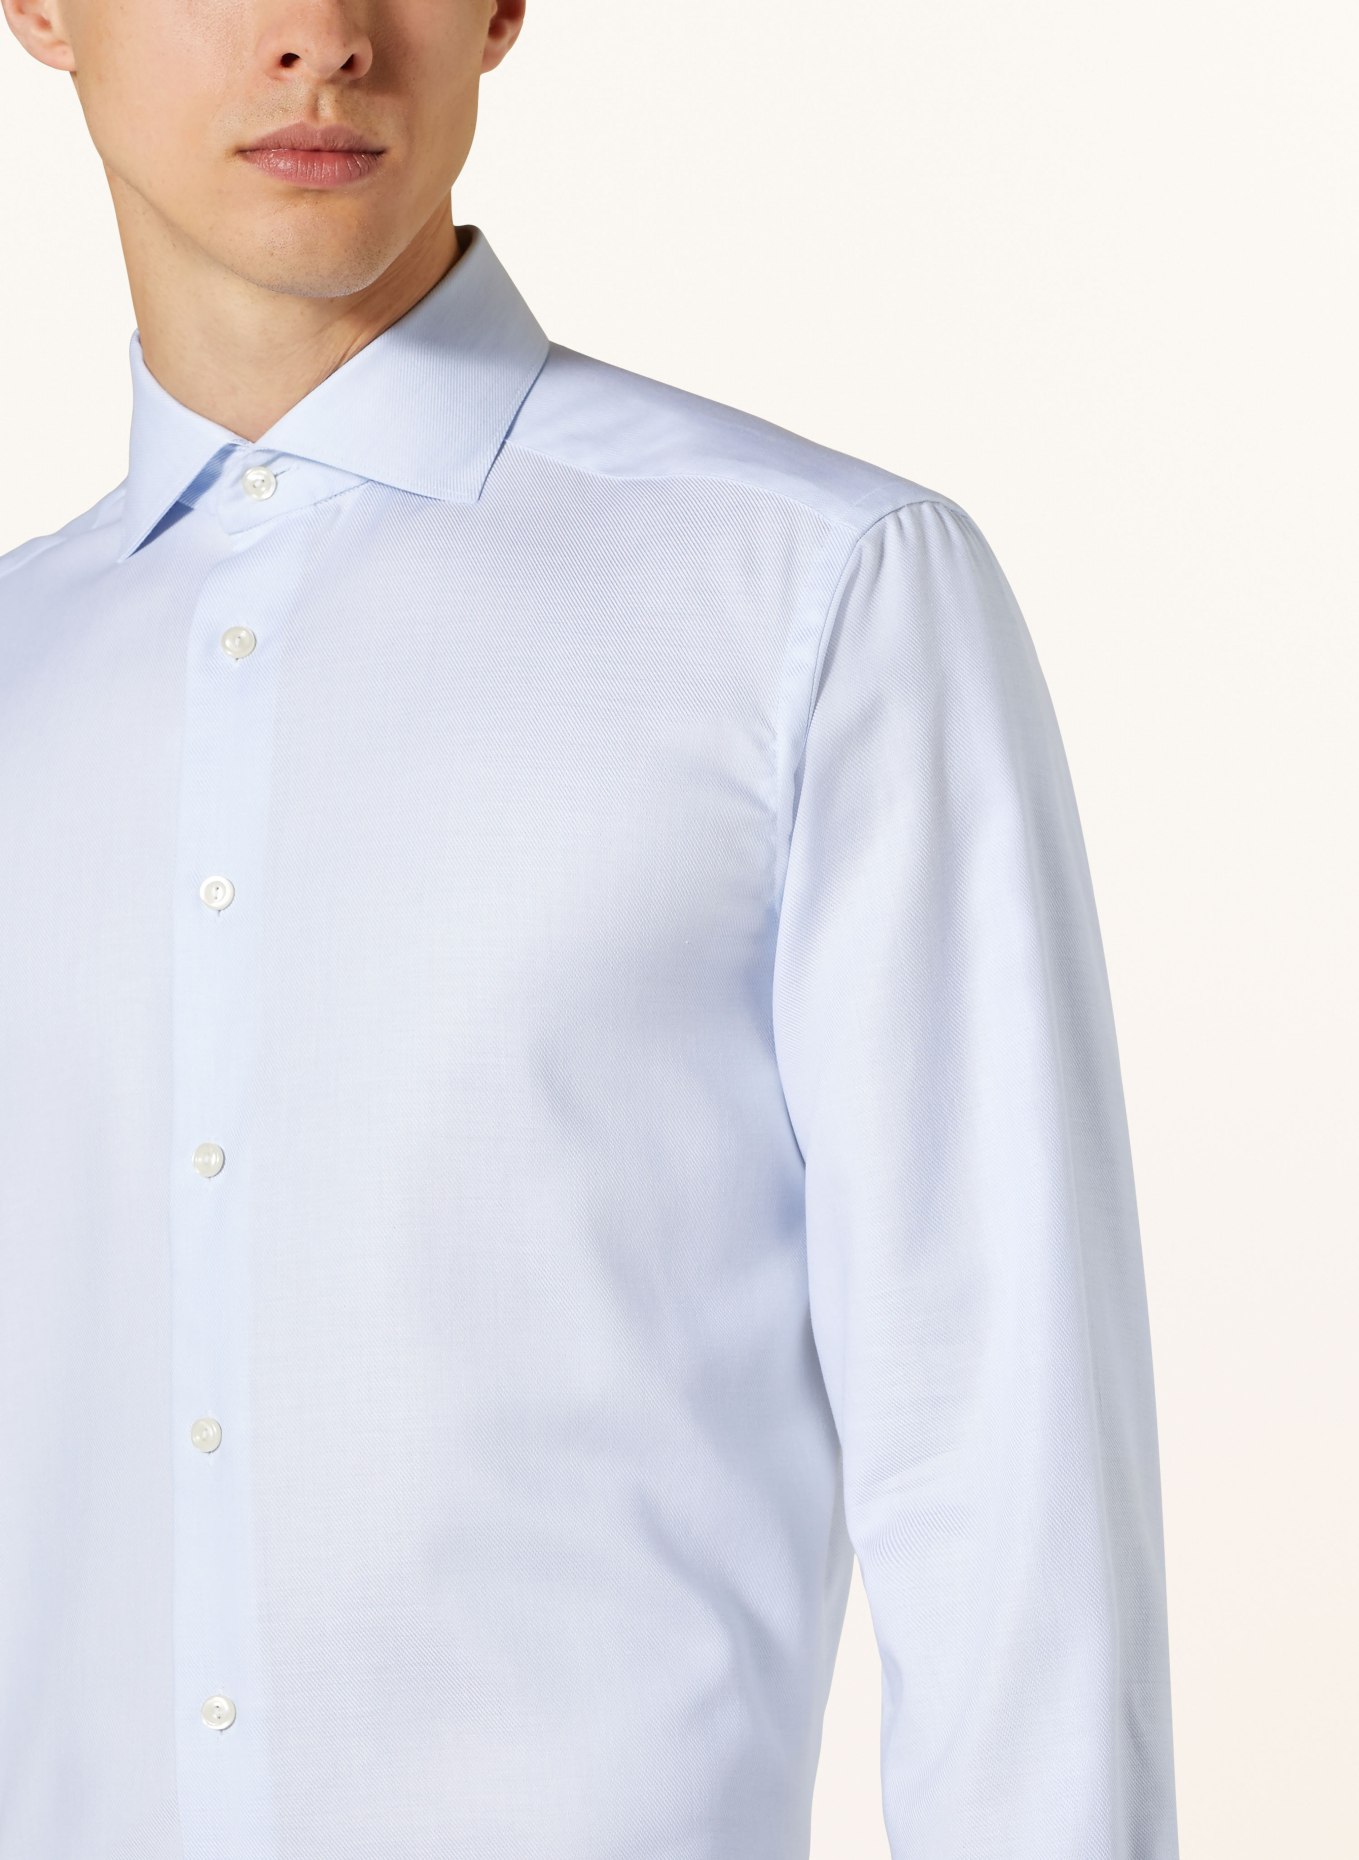 ETON Shirt contemporary fit, Color: LIGHT BLUE (Image 4)